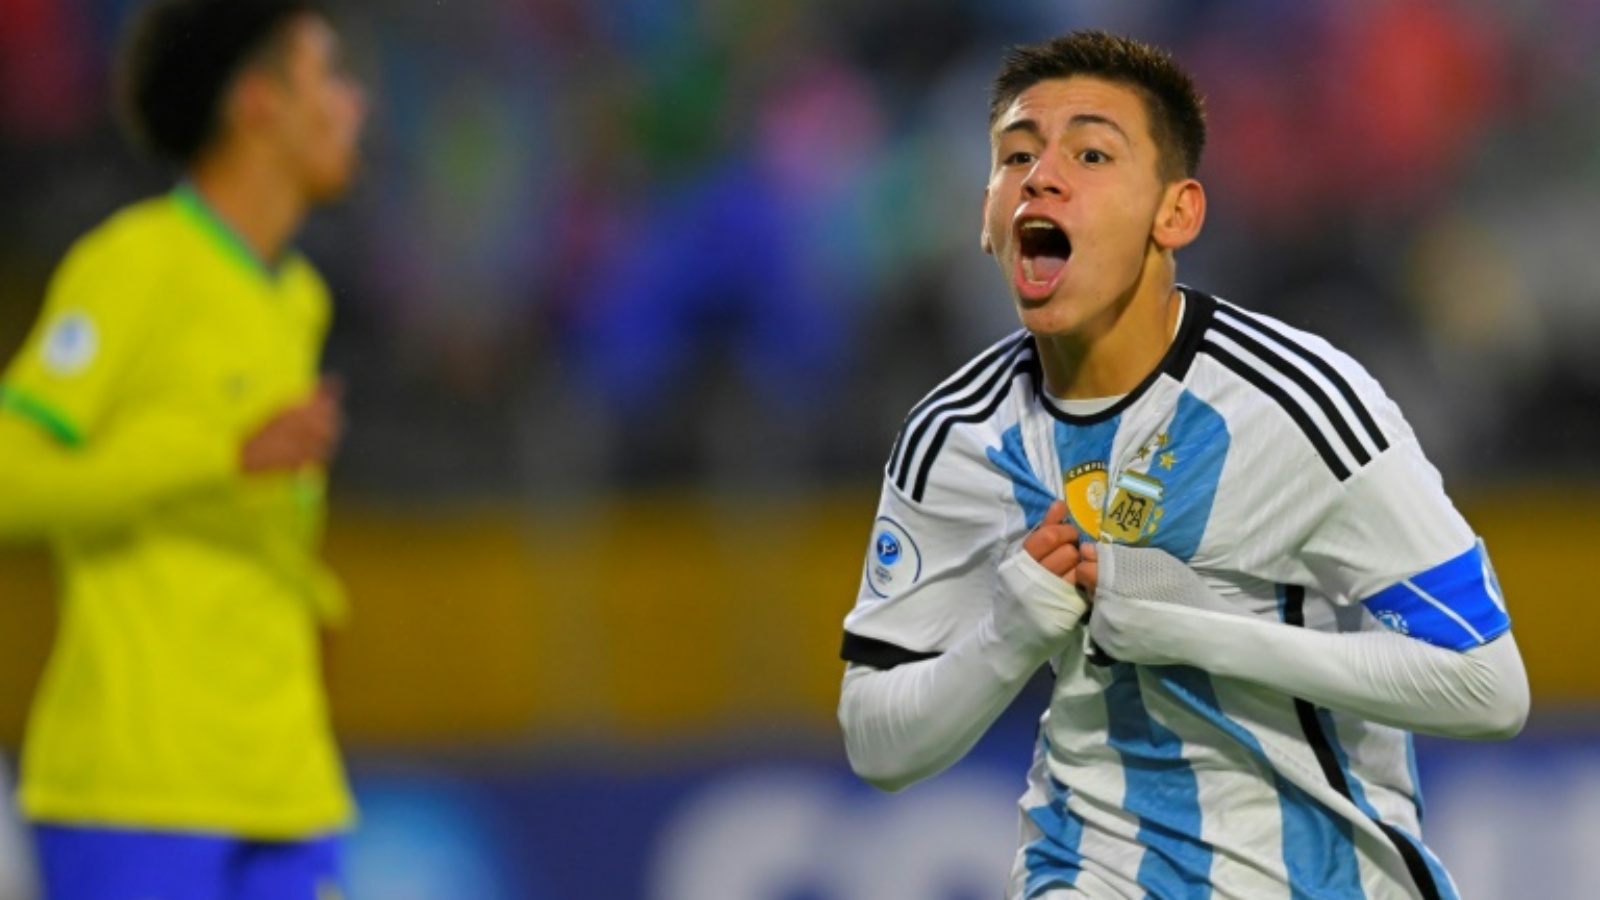 الأرجنتيني كلاوديو إيتشيفيري يسجل لبلاده في كأس أميركا الجنوبية تحت 17 سنة في مرمى البرازيل في 23 نيسان (أبريل) 2023